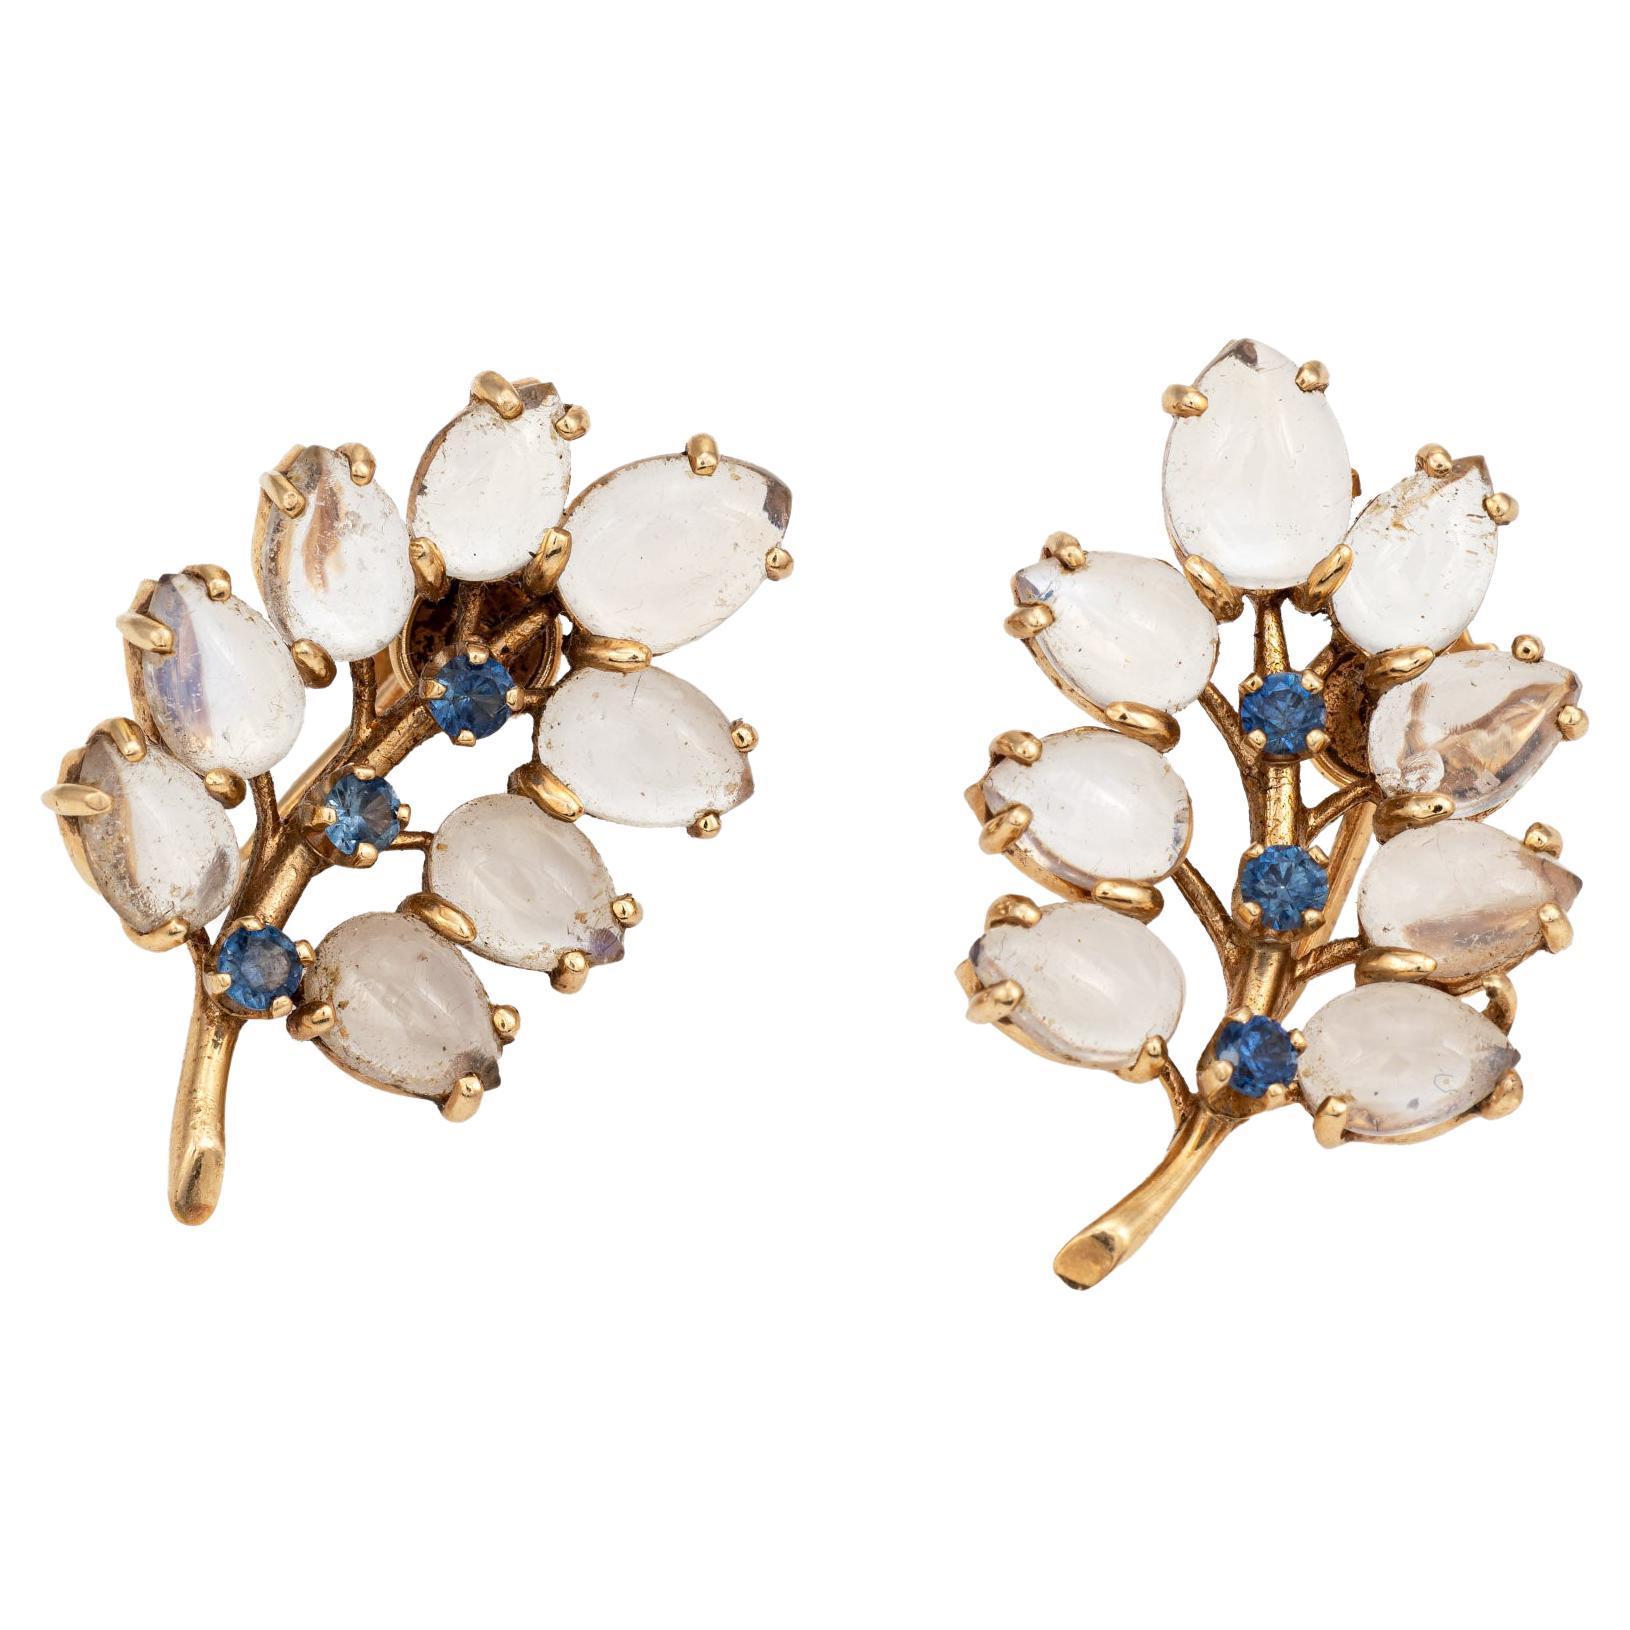 Wordley Allsopp & Bliss Moonstone Earrings Leaf Vintage Sapphire 14k Gold